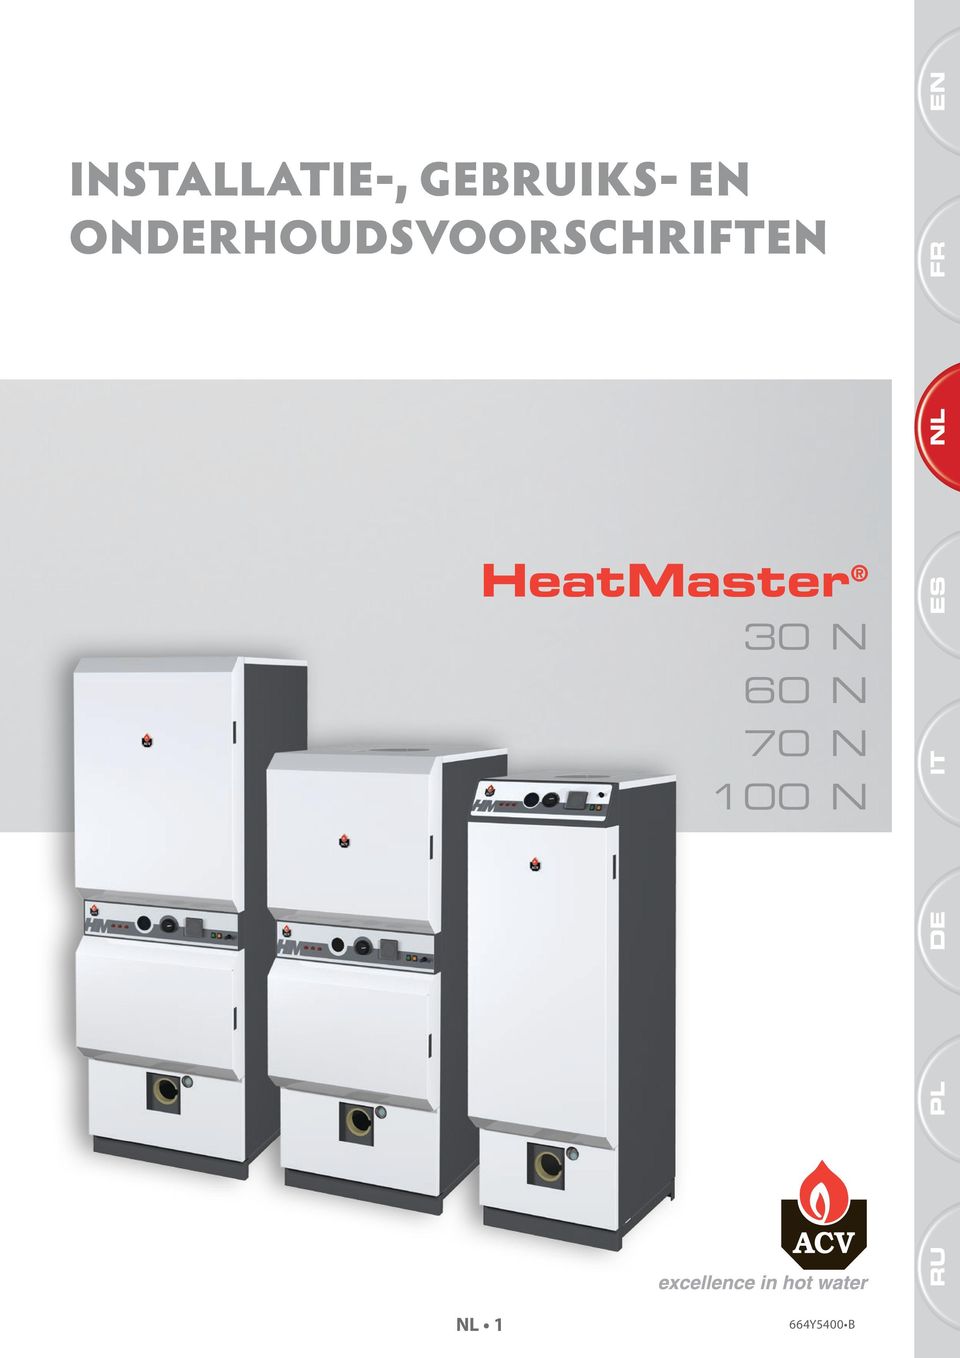 HeatMaster 30 N 60 N